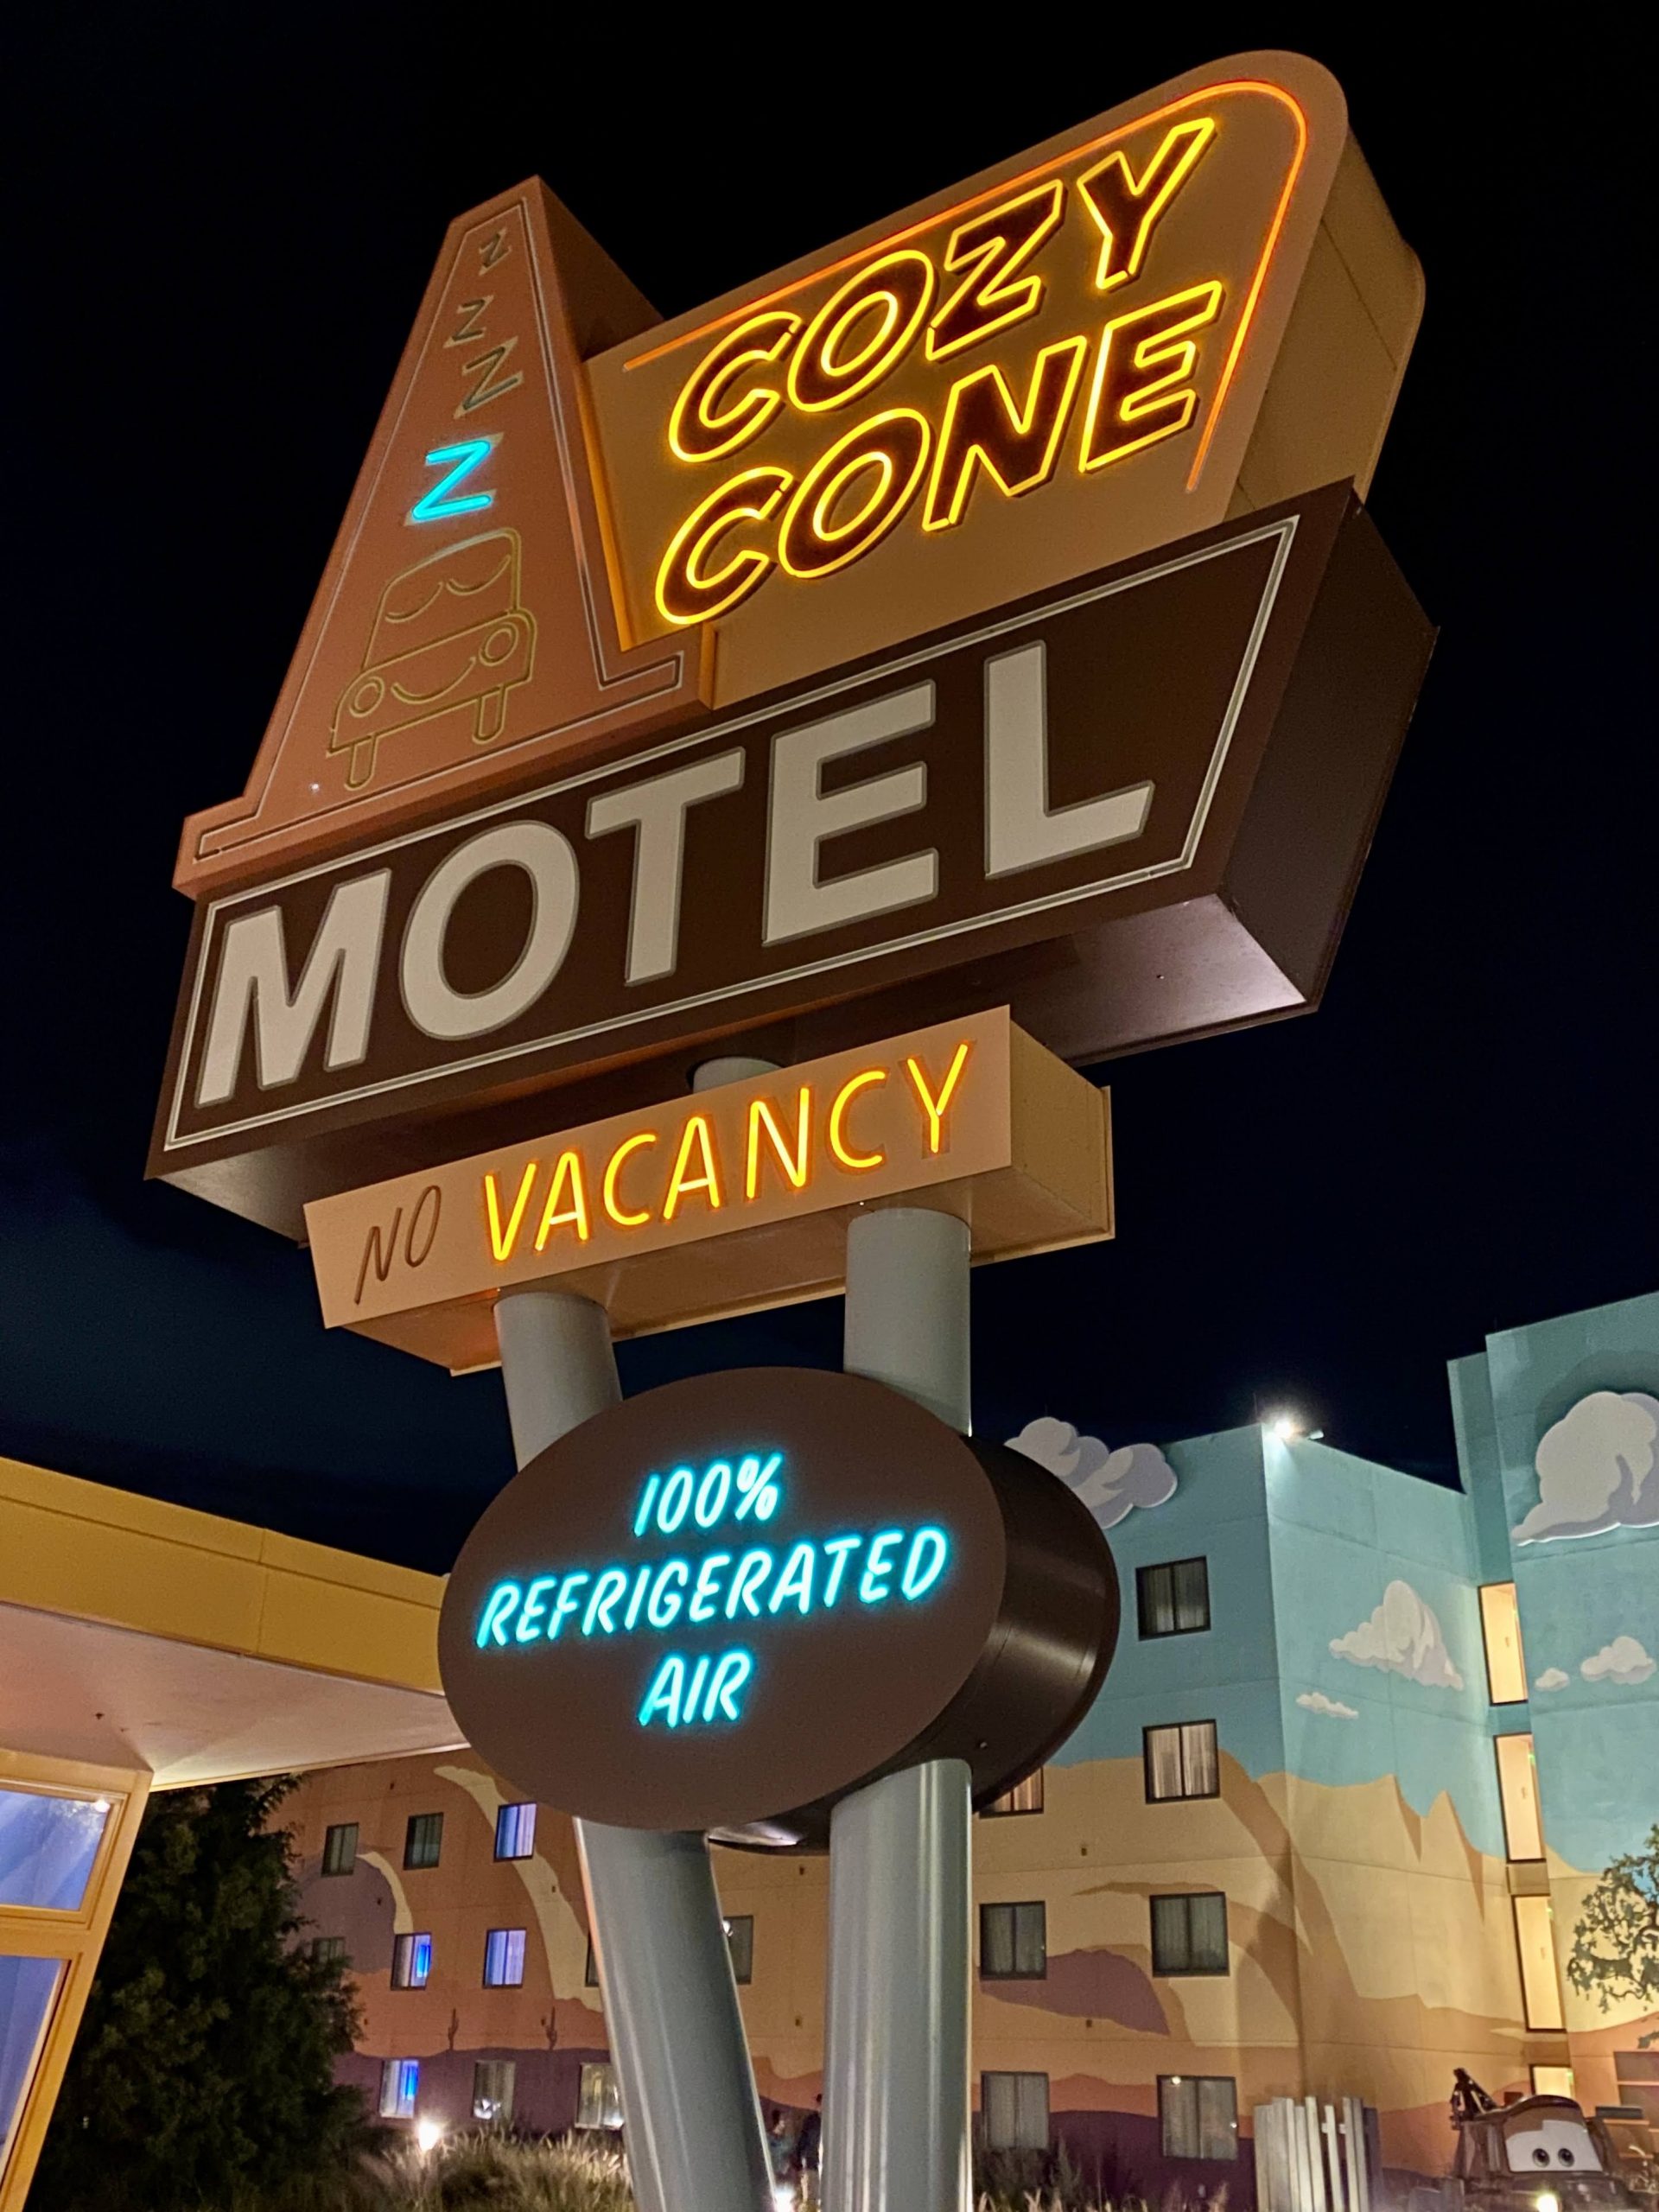 Cozy Cone Hotel sign